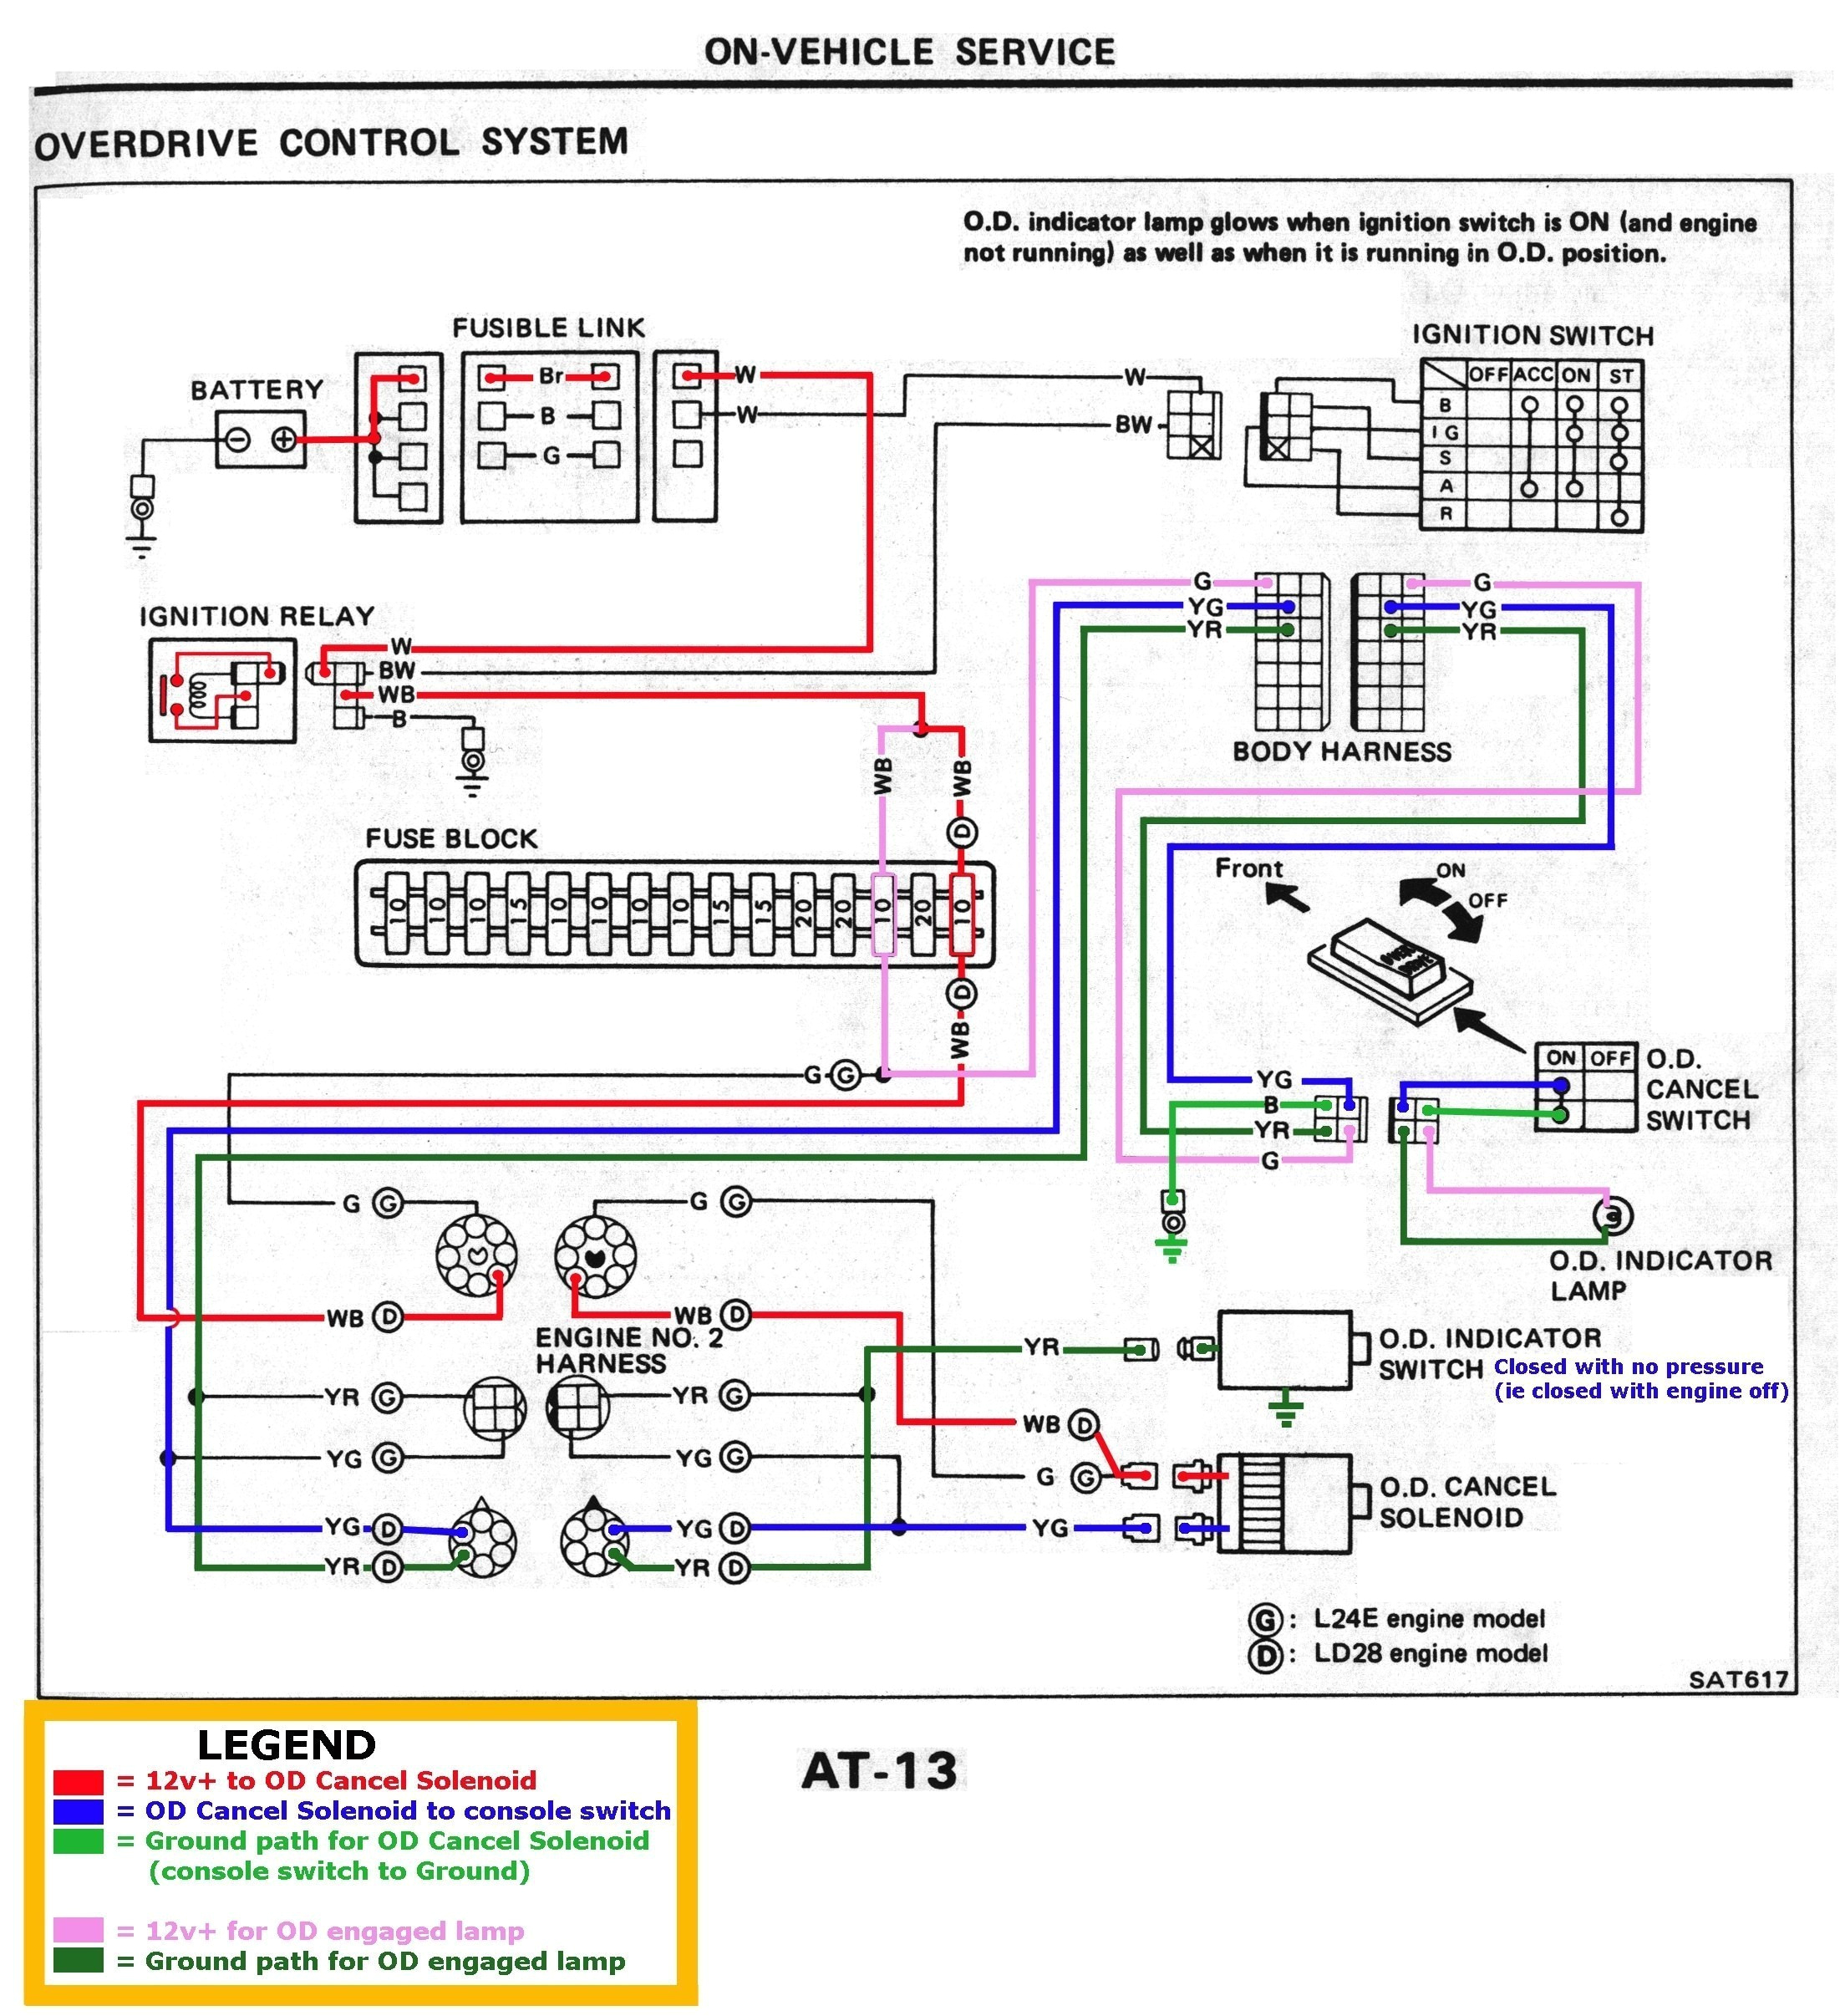 jets wiring harness schematic wiring diagram centre jets wiring harness schematic